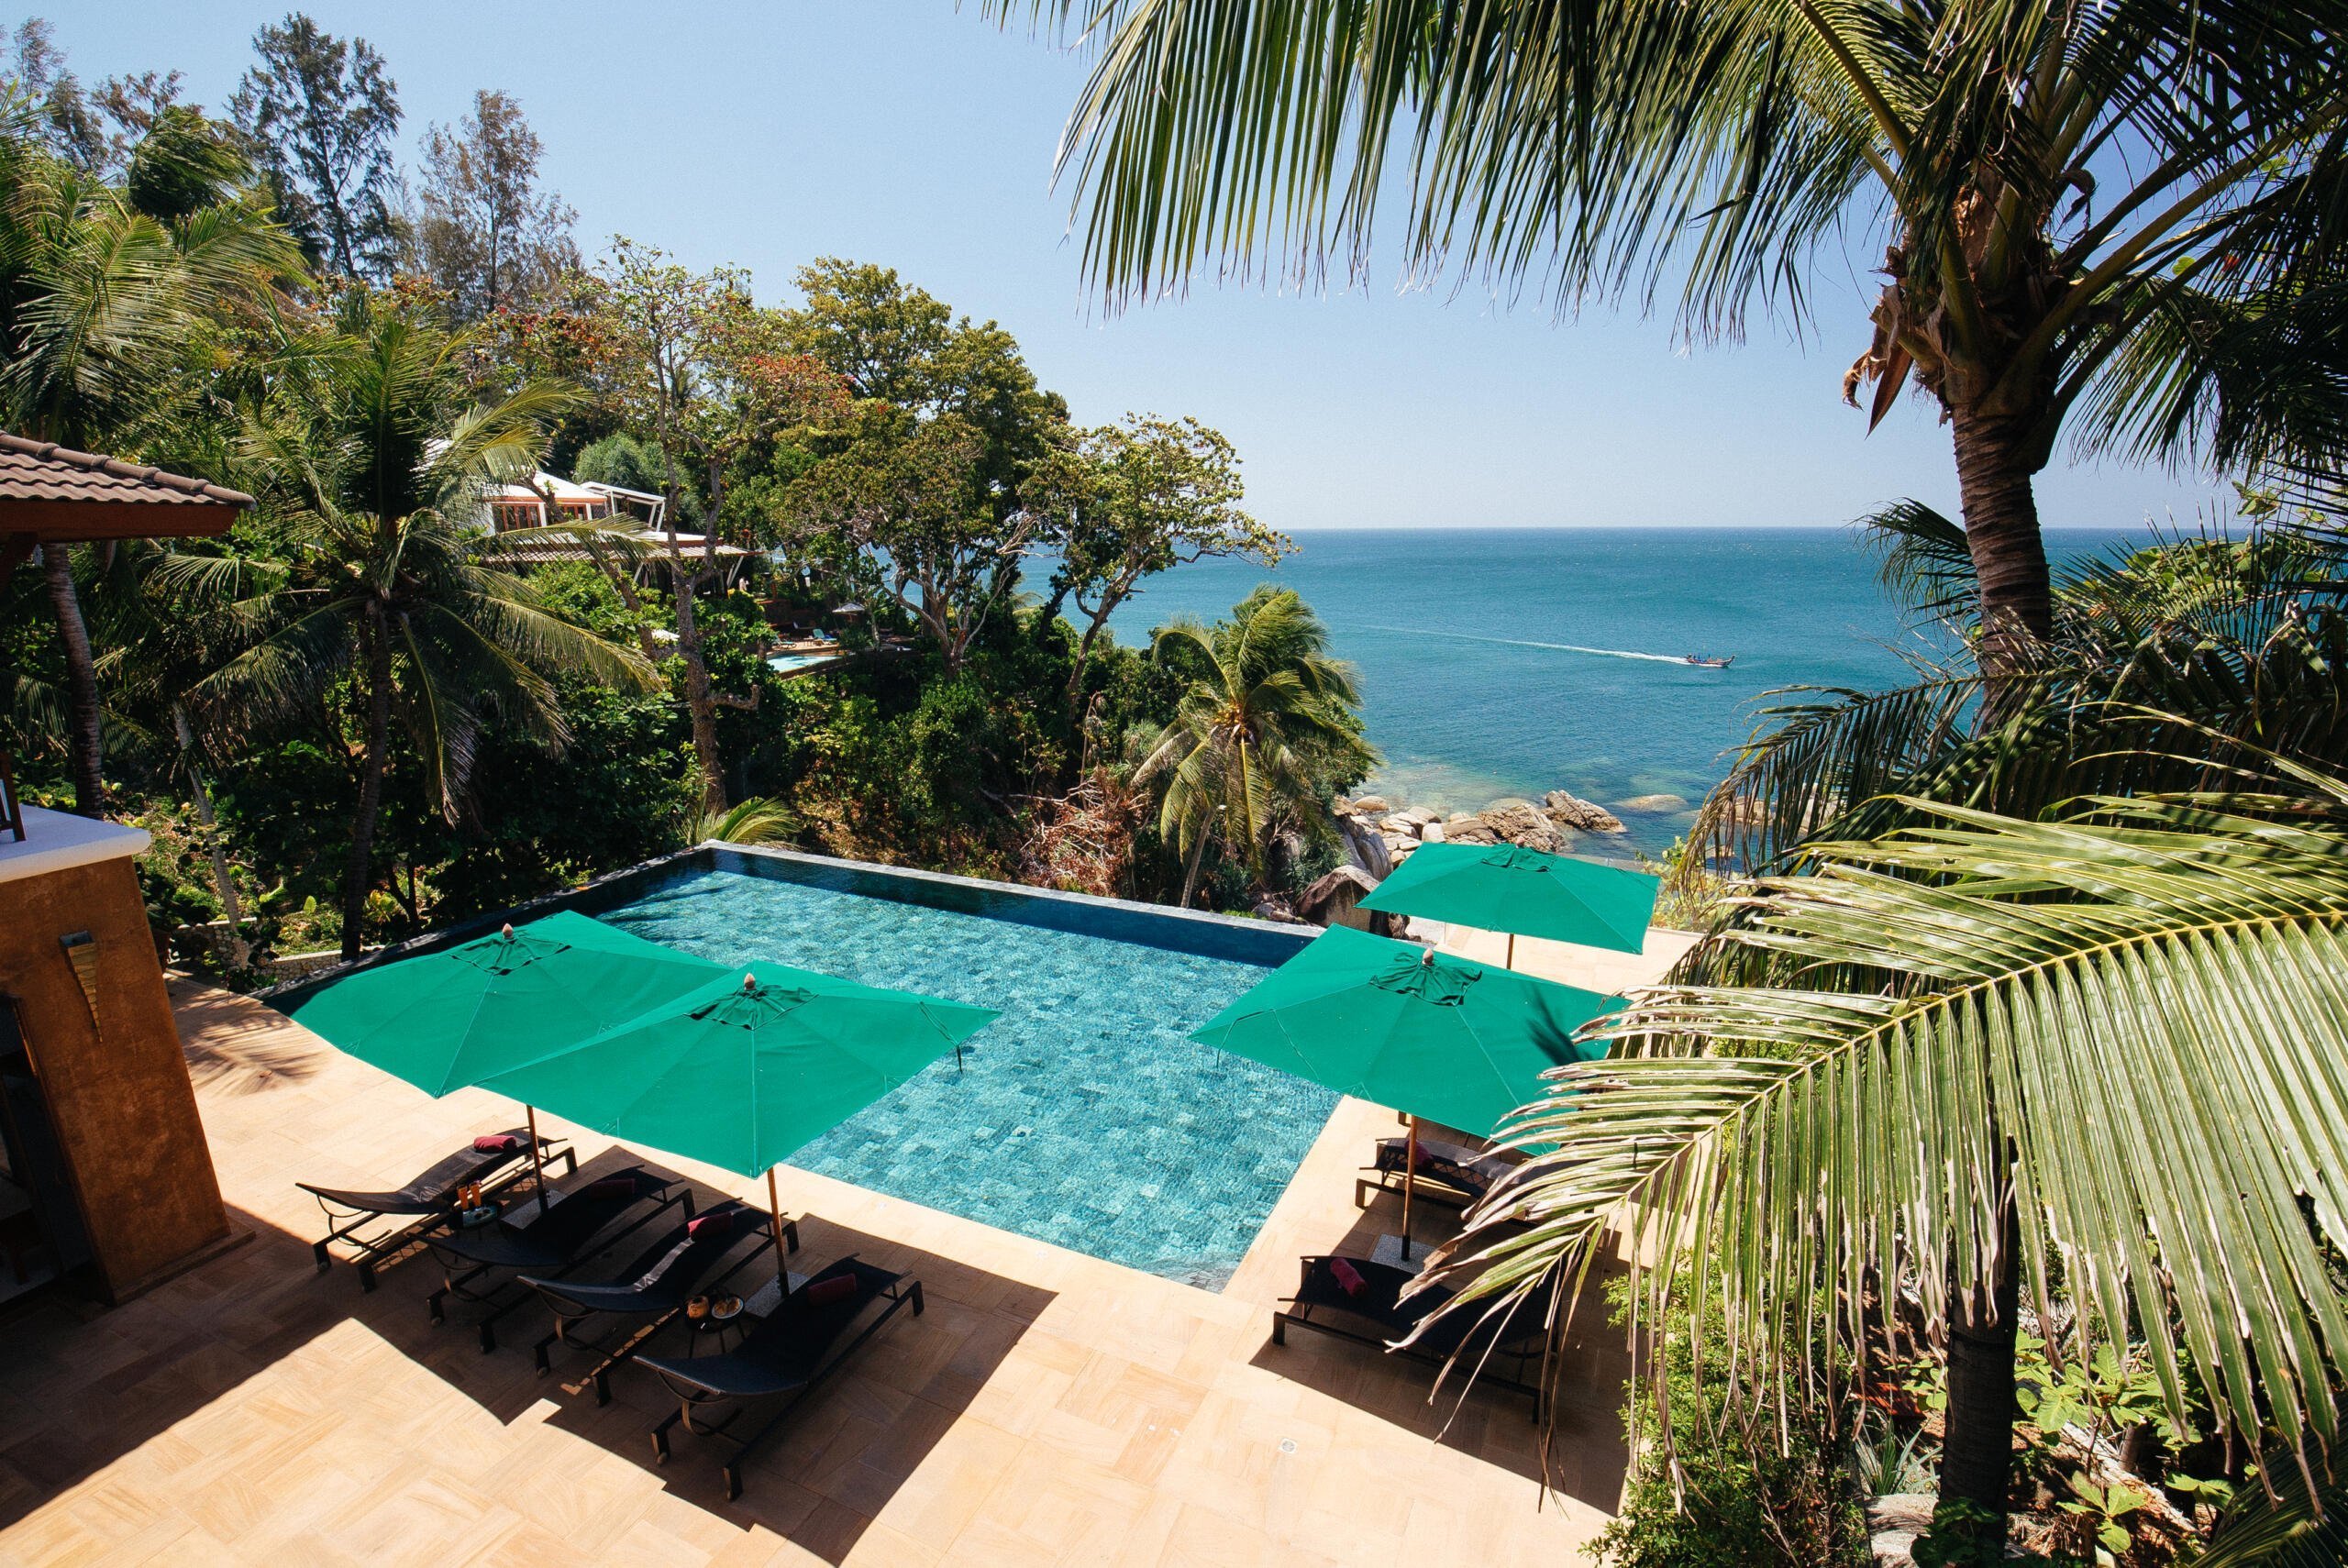 villa sunyata pool overlooking the ocean view from master bedroom 2